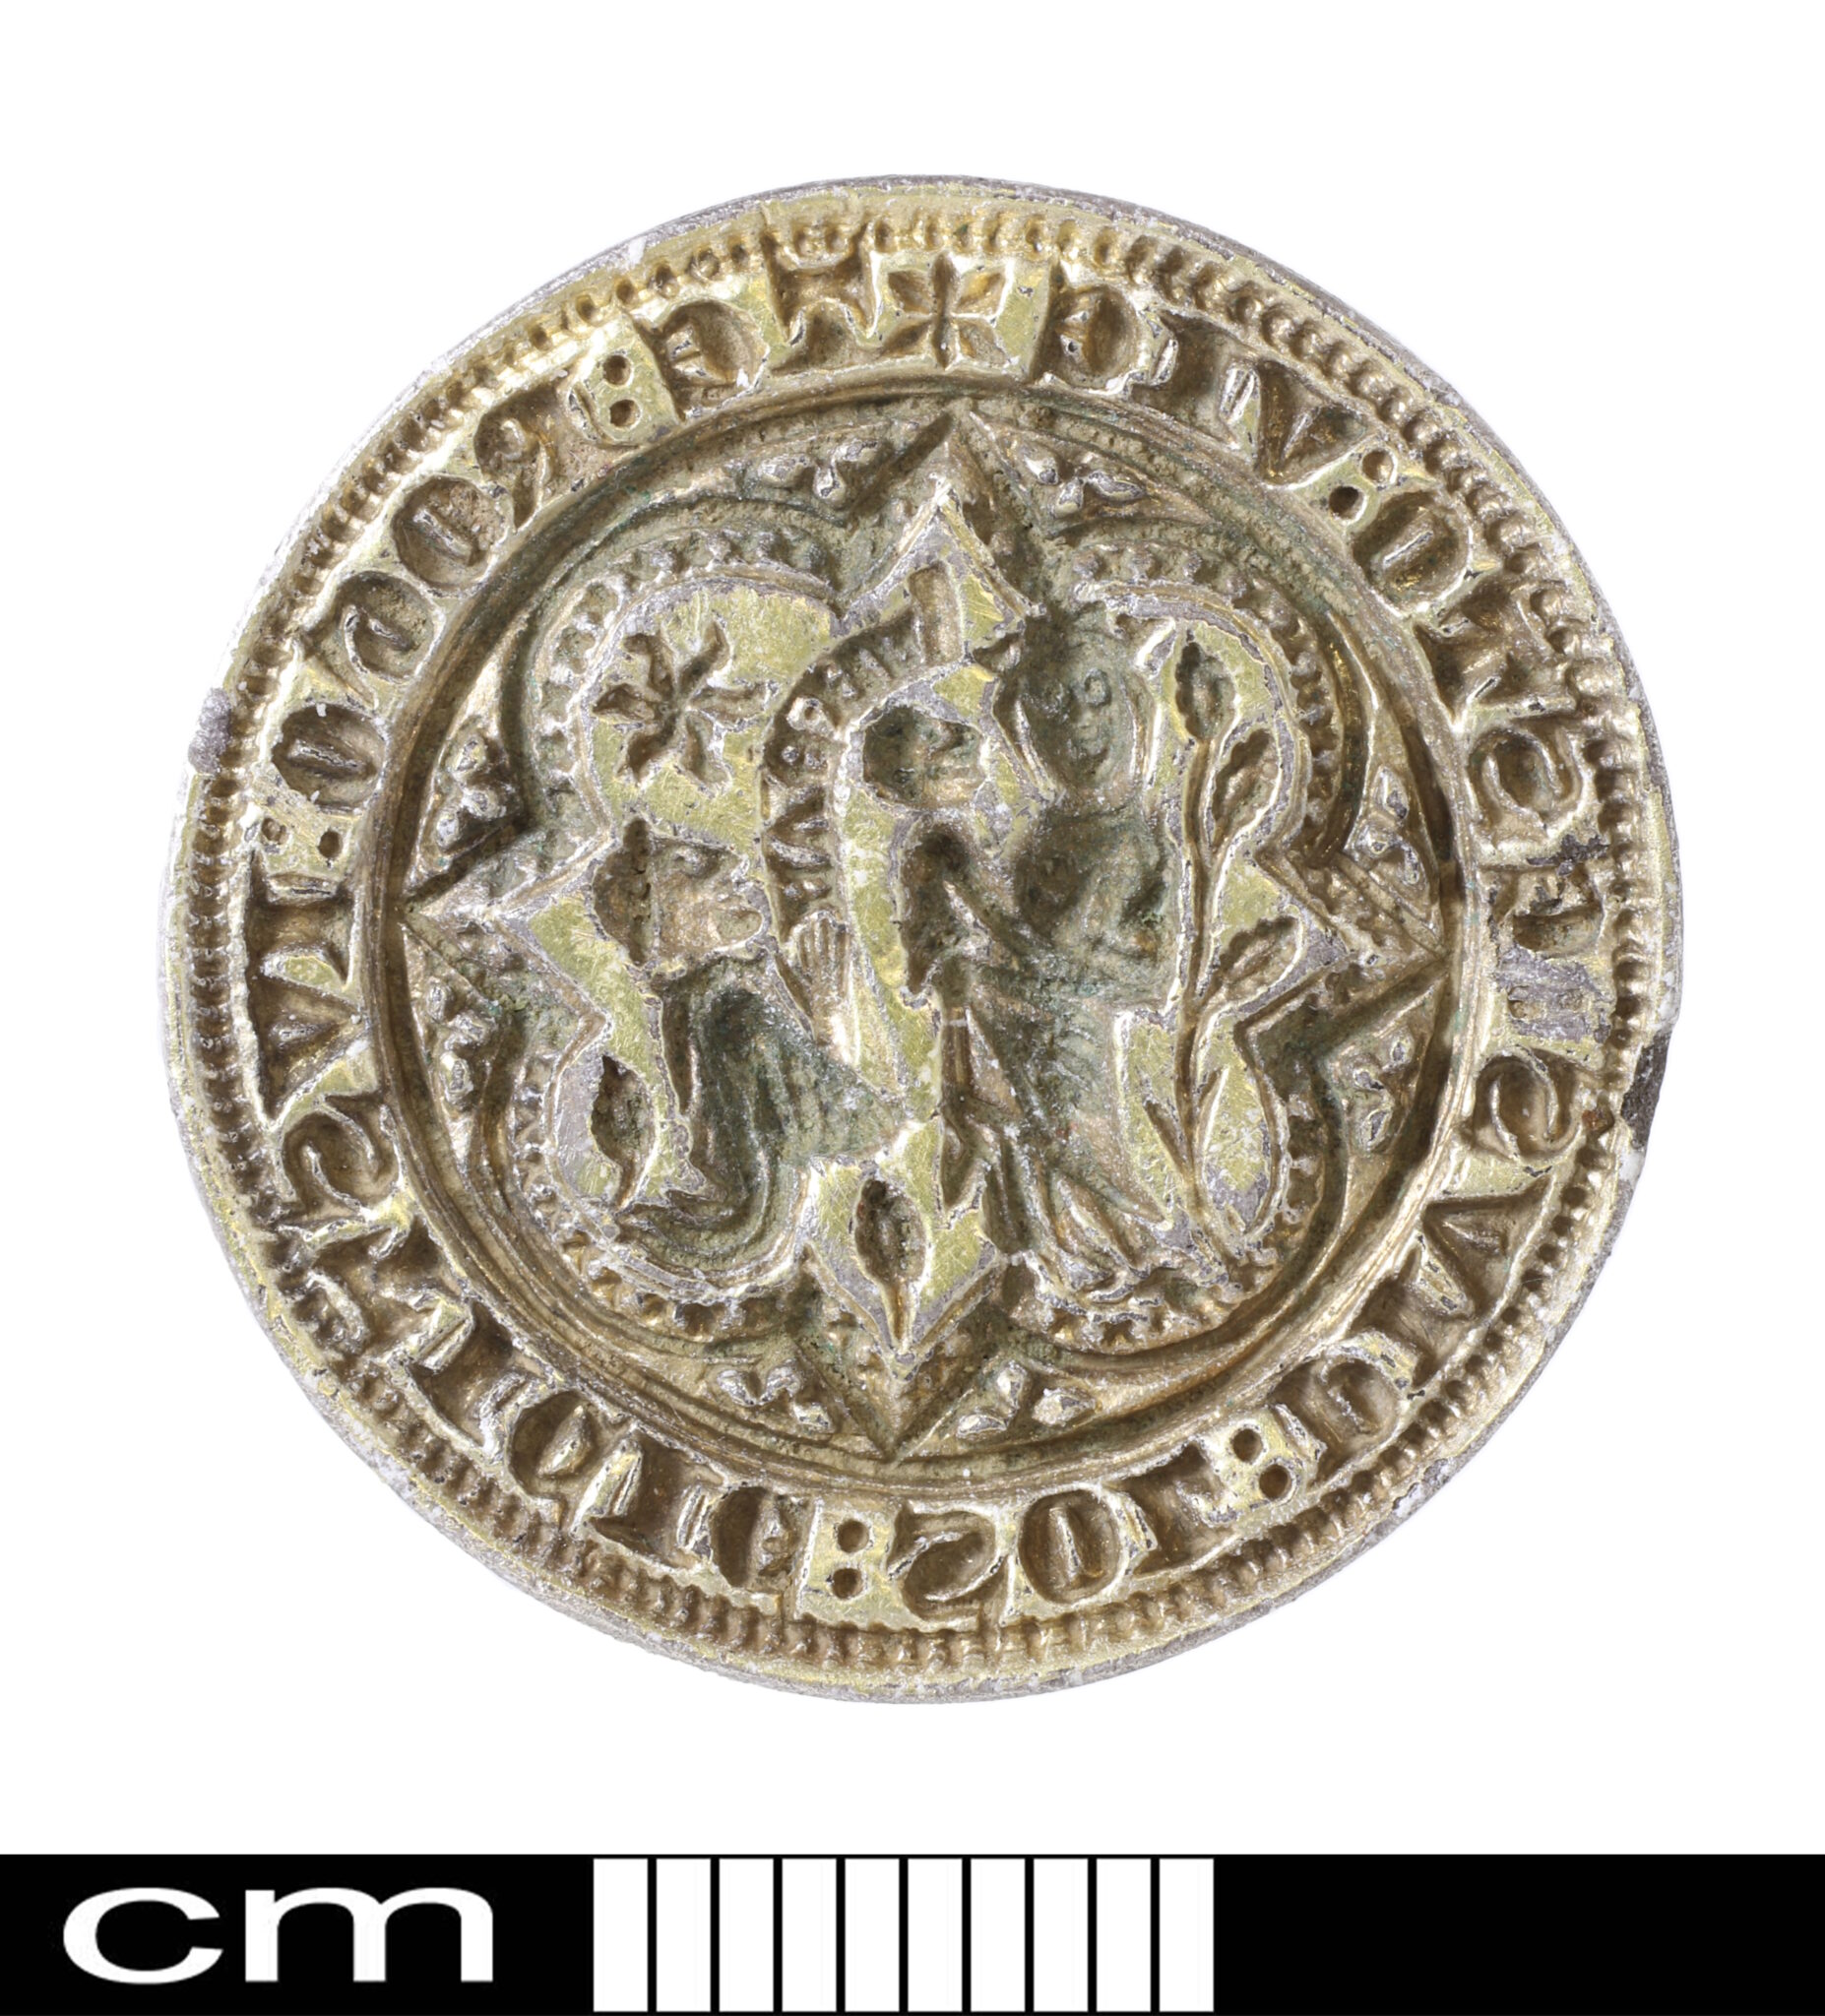 Unique medieval seal matrix found in Norfolk